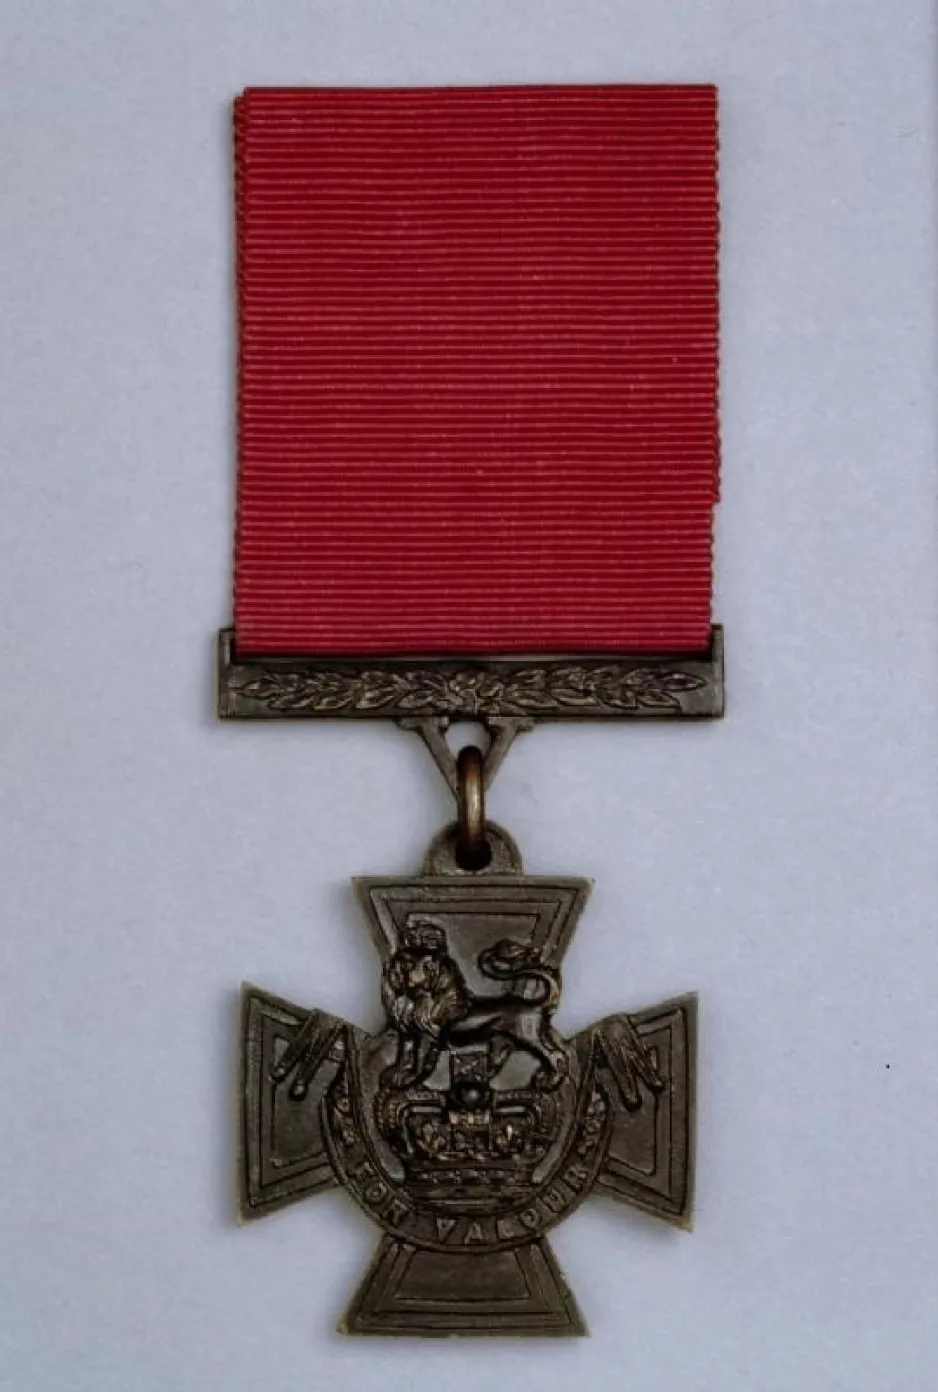 Croix de Victoria — croix de bronze sur laquelle figurent une couronne coiffée d’un lion et un listel portant l’inscription « FOR VALOUR ».